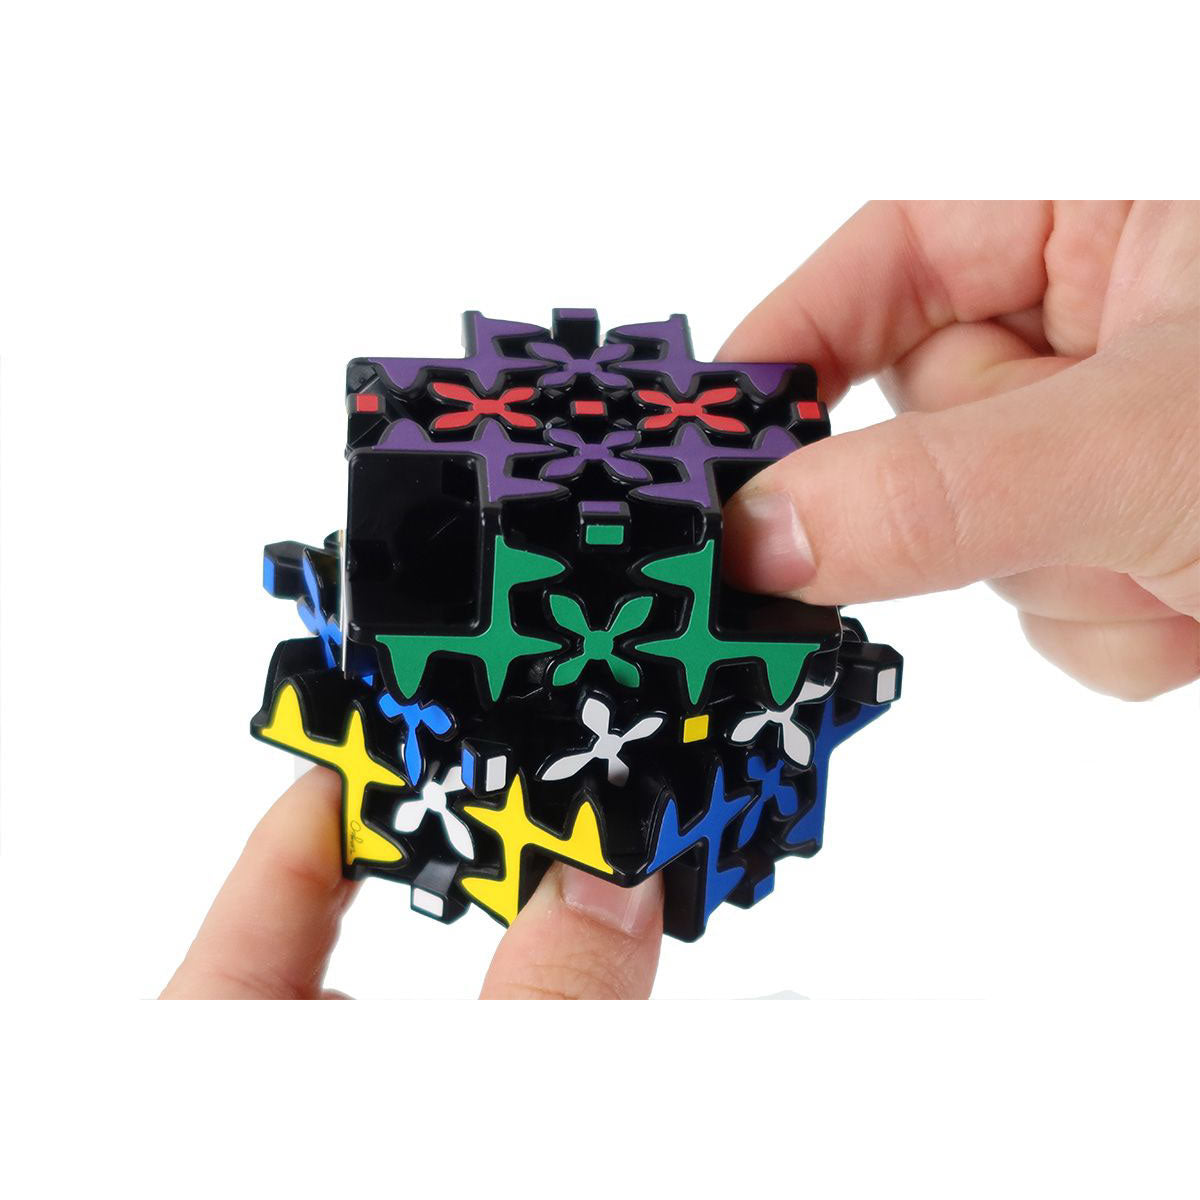 Meffert's Maltese Gear Cube